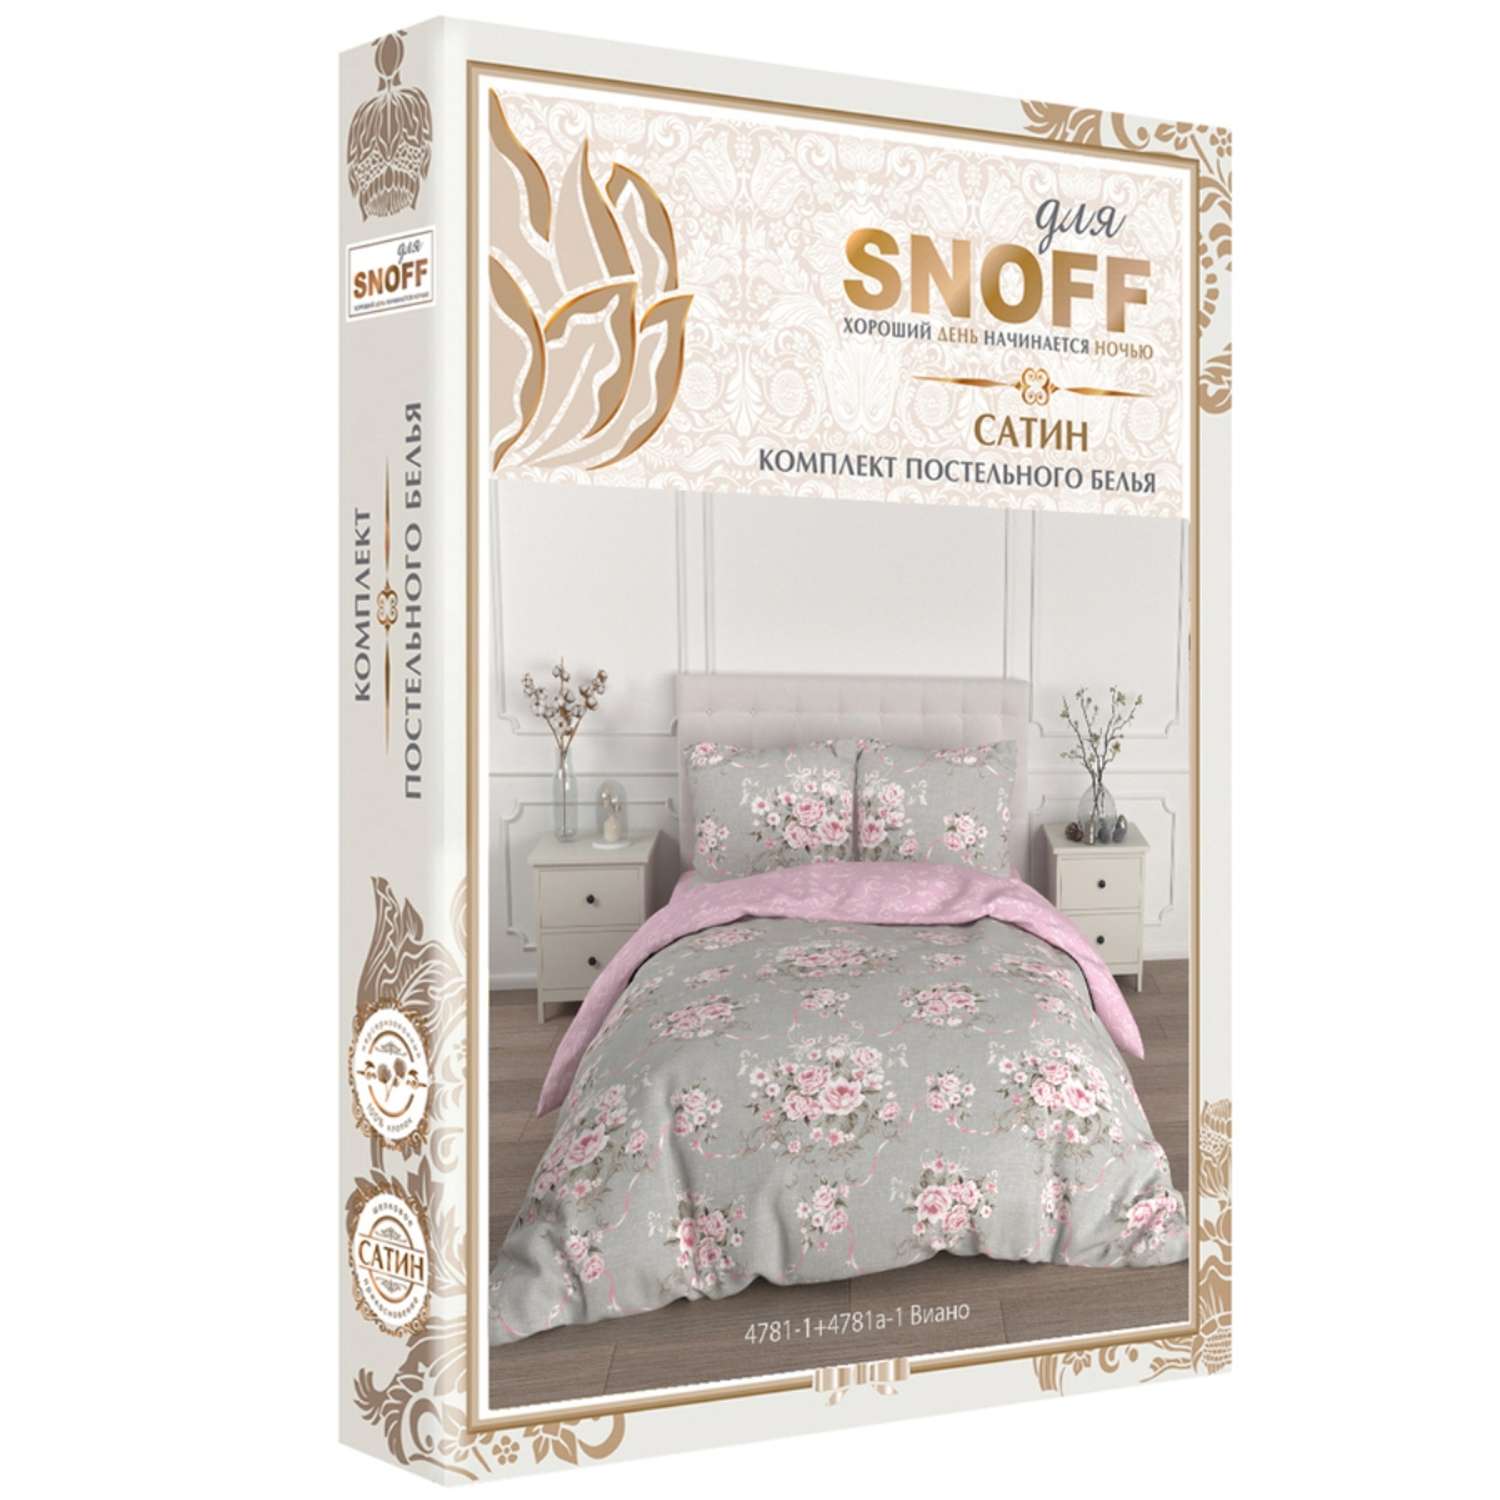 Комплект постельного белья для SNOFF Виано 1.5спальный сатин - фото 7